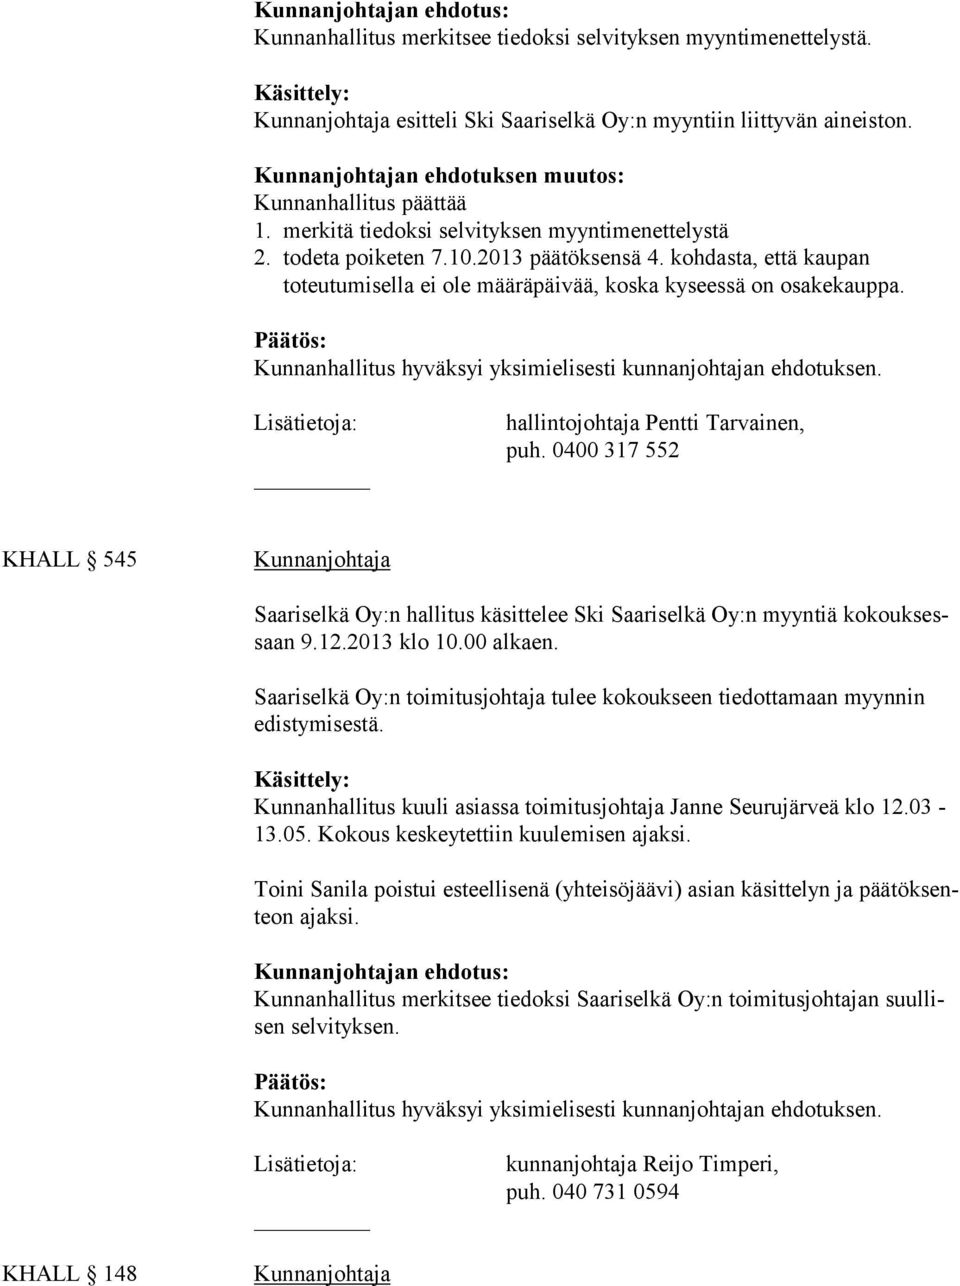 hallintojohtaja Pentti Tarvainen, puh. 0400 317 552 KHALL 545 Saariselkä Oy:n hallitus käsittelee Ski Saariselkä Oy:n myyntiä kokouksessaan 9.12.2013 klo 10.00 alkaen.